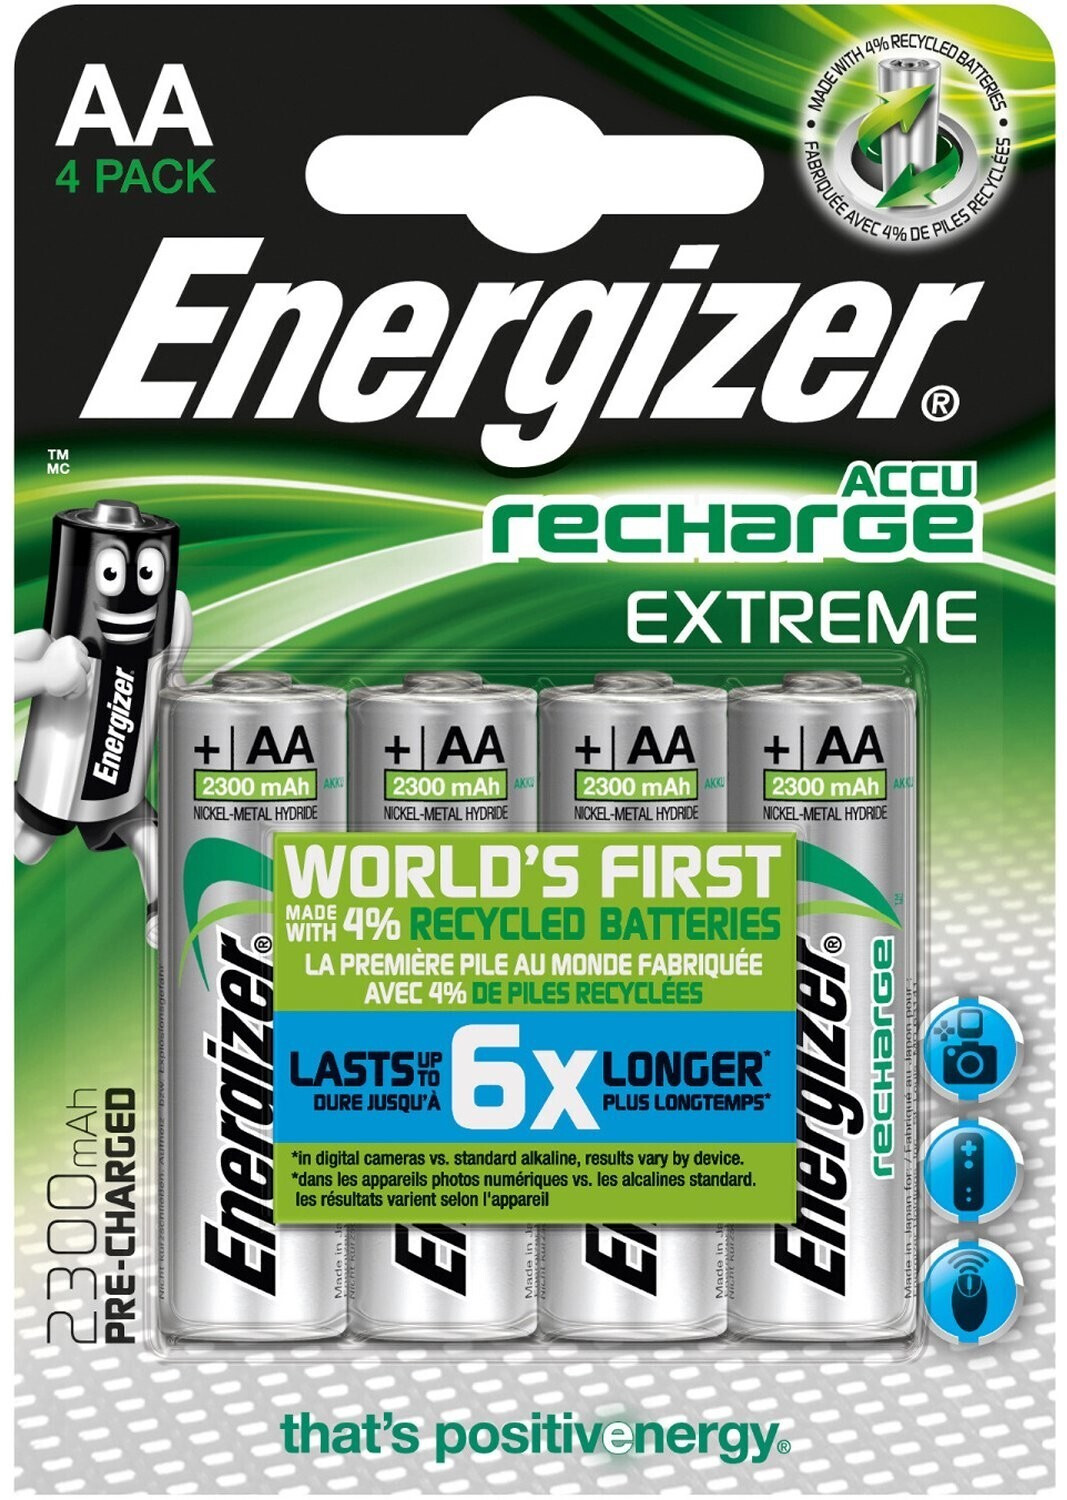 9,76 Recharge (4 Energizer bei 2300 ab St.) € Preisvergleich mAh AA | Extreme